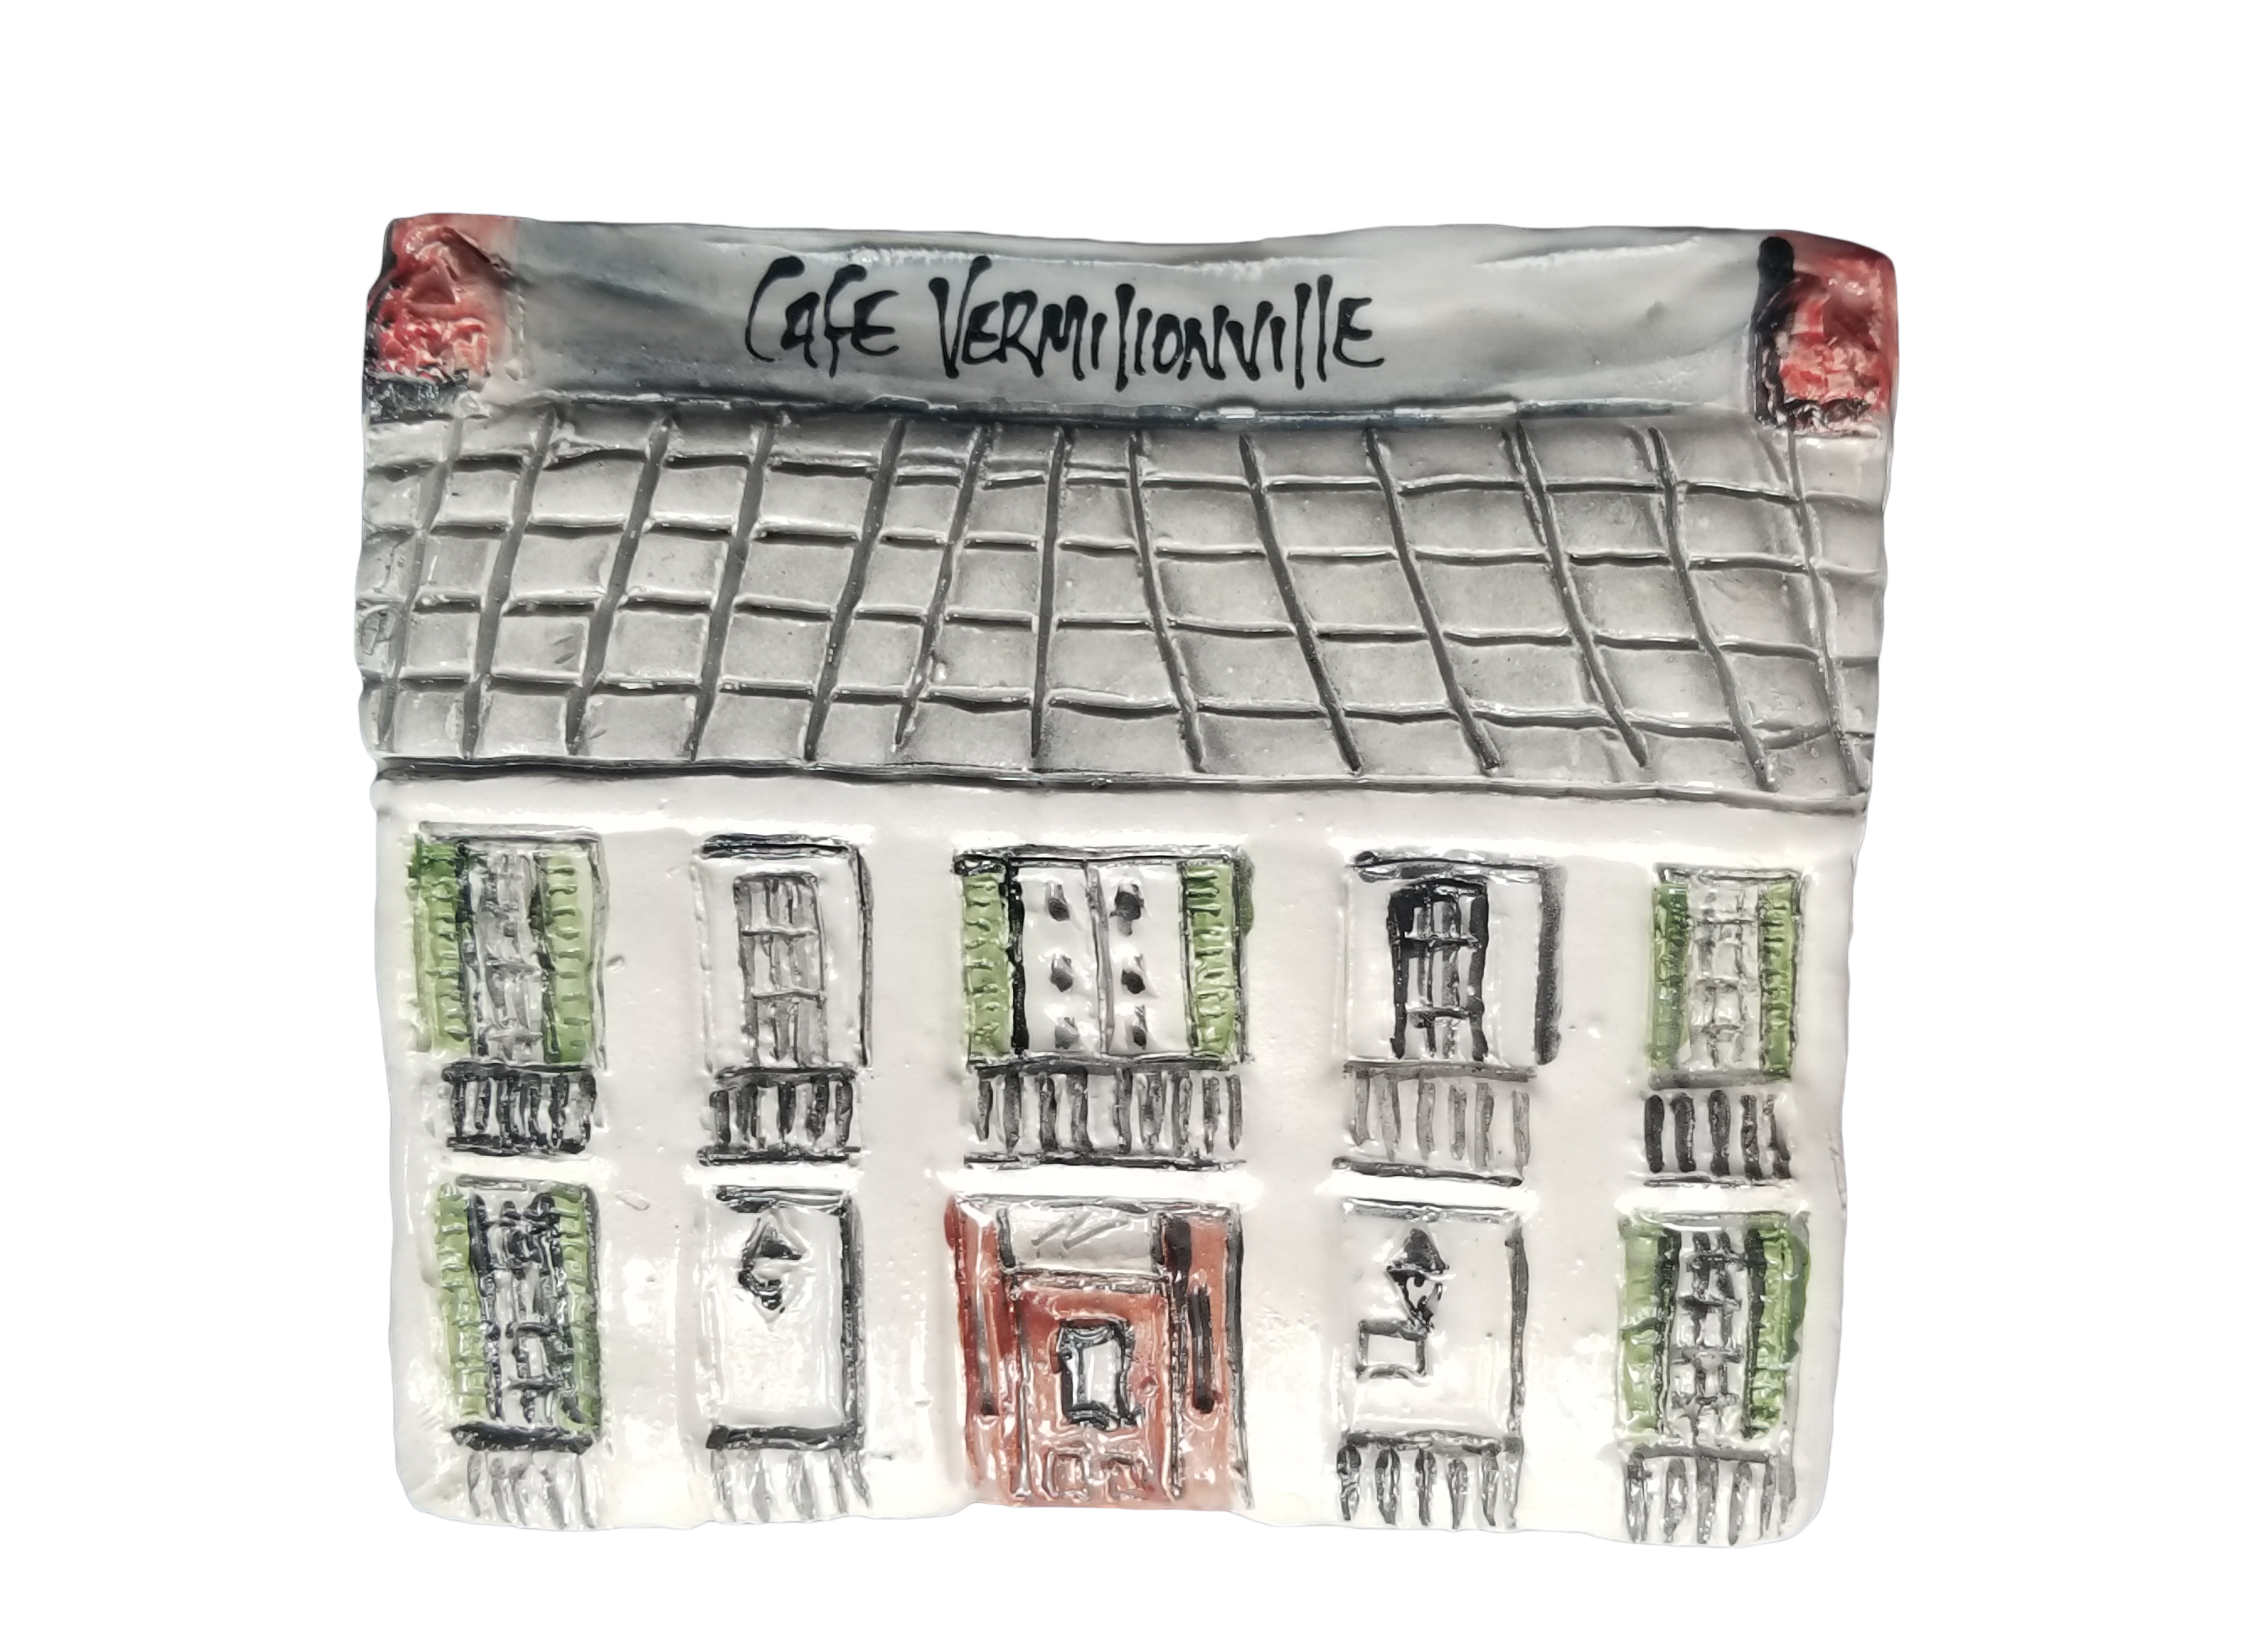 Cafe Vermilionville